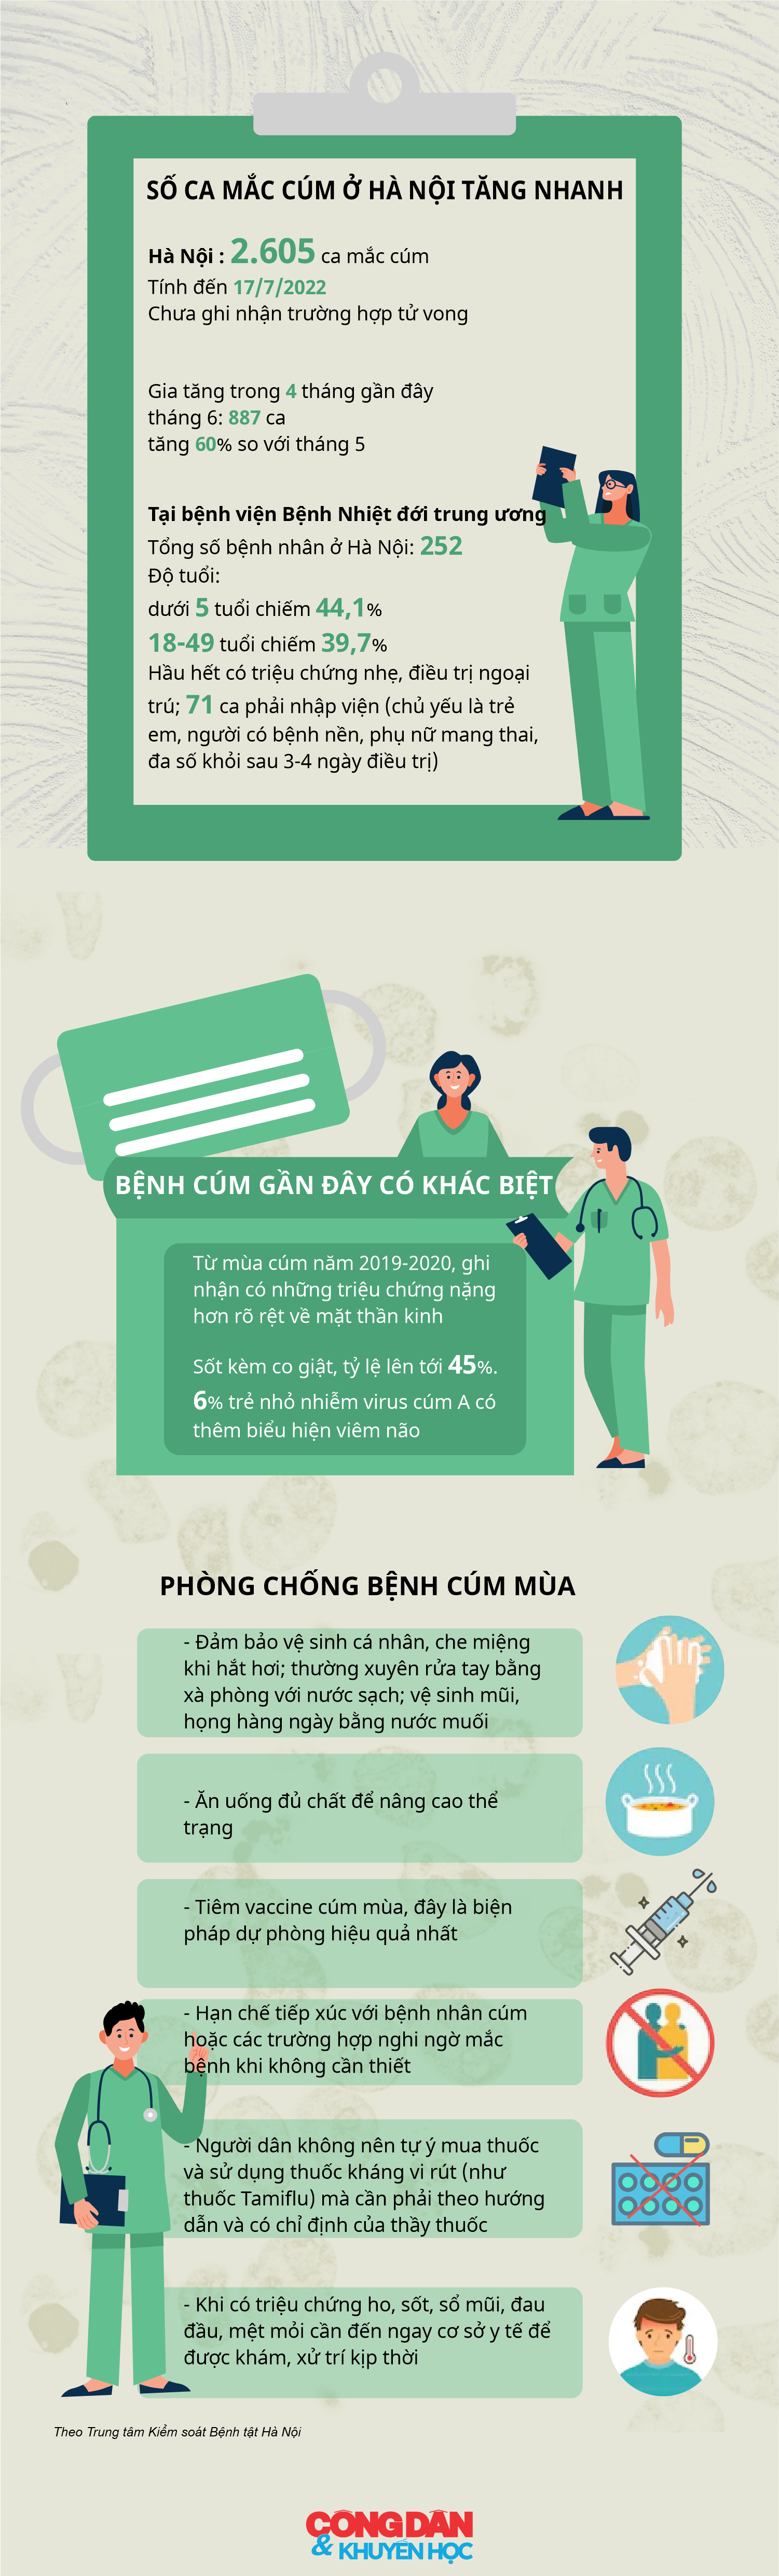 [Infographic] Hà Nội ghi nhận hơn 2.600 ca mắc cúm mùa - Ảnh 1.